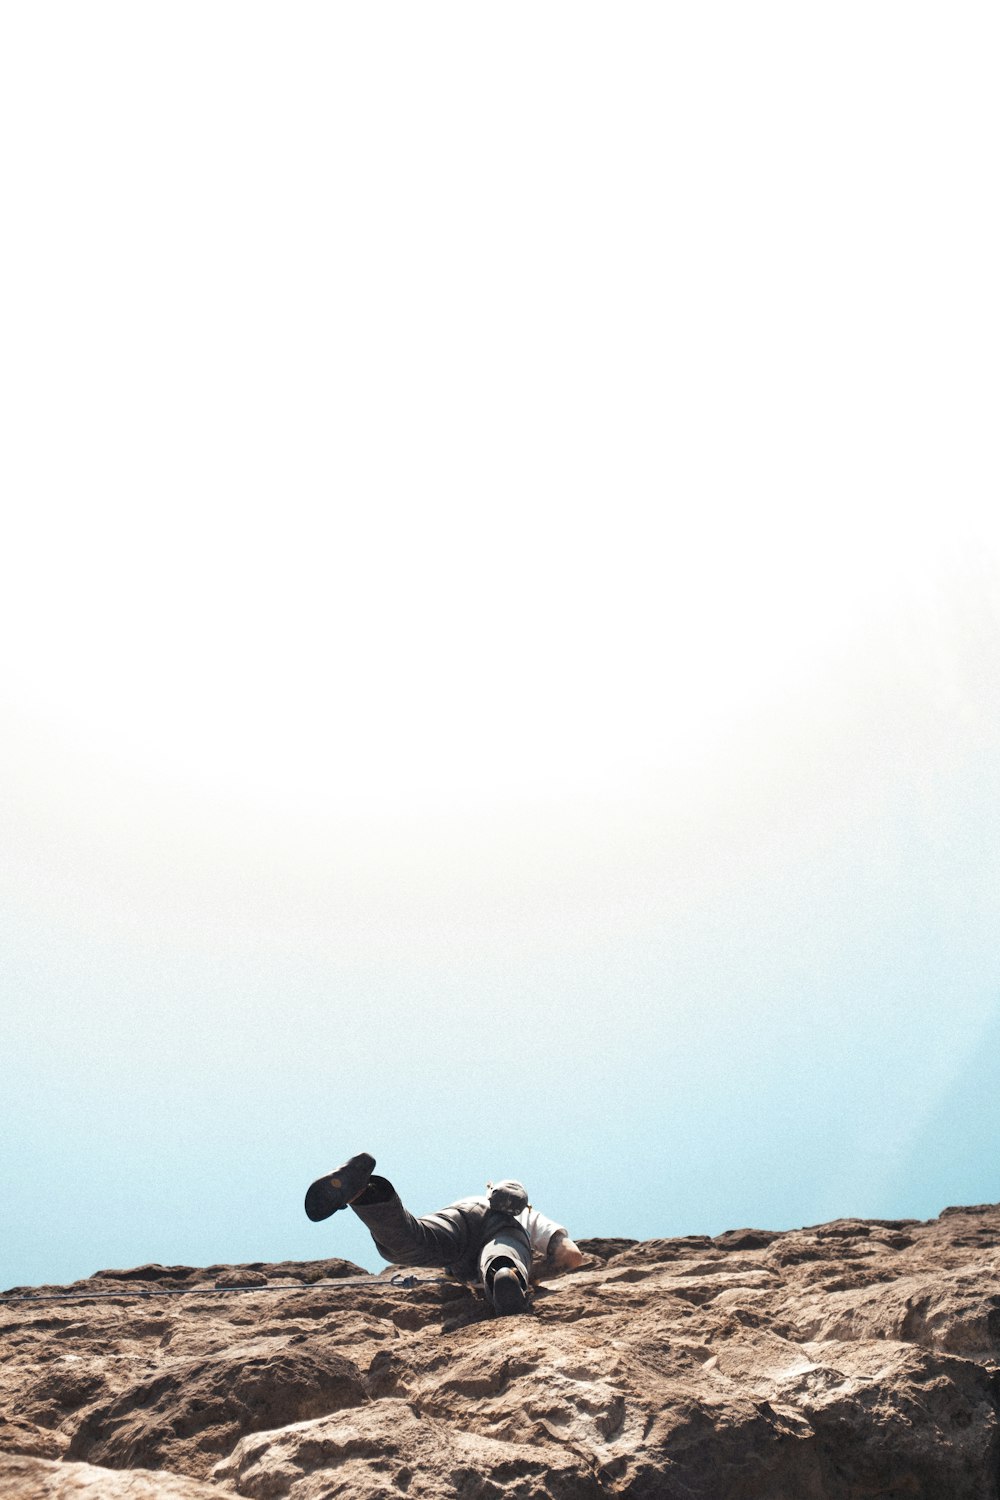 Silueta del hombre sentado en la formación rocosa durante el día